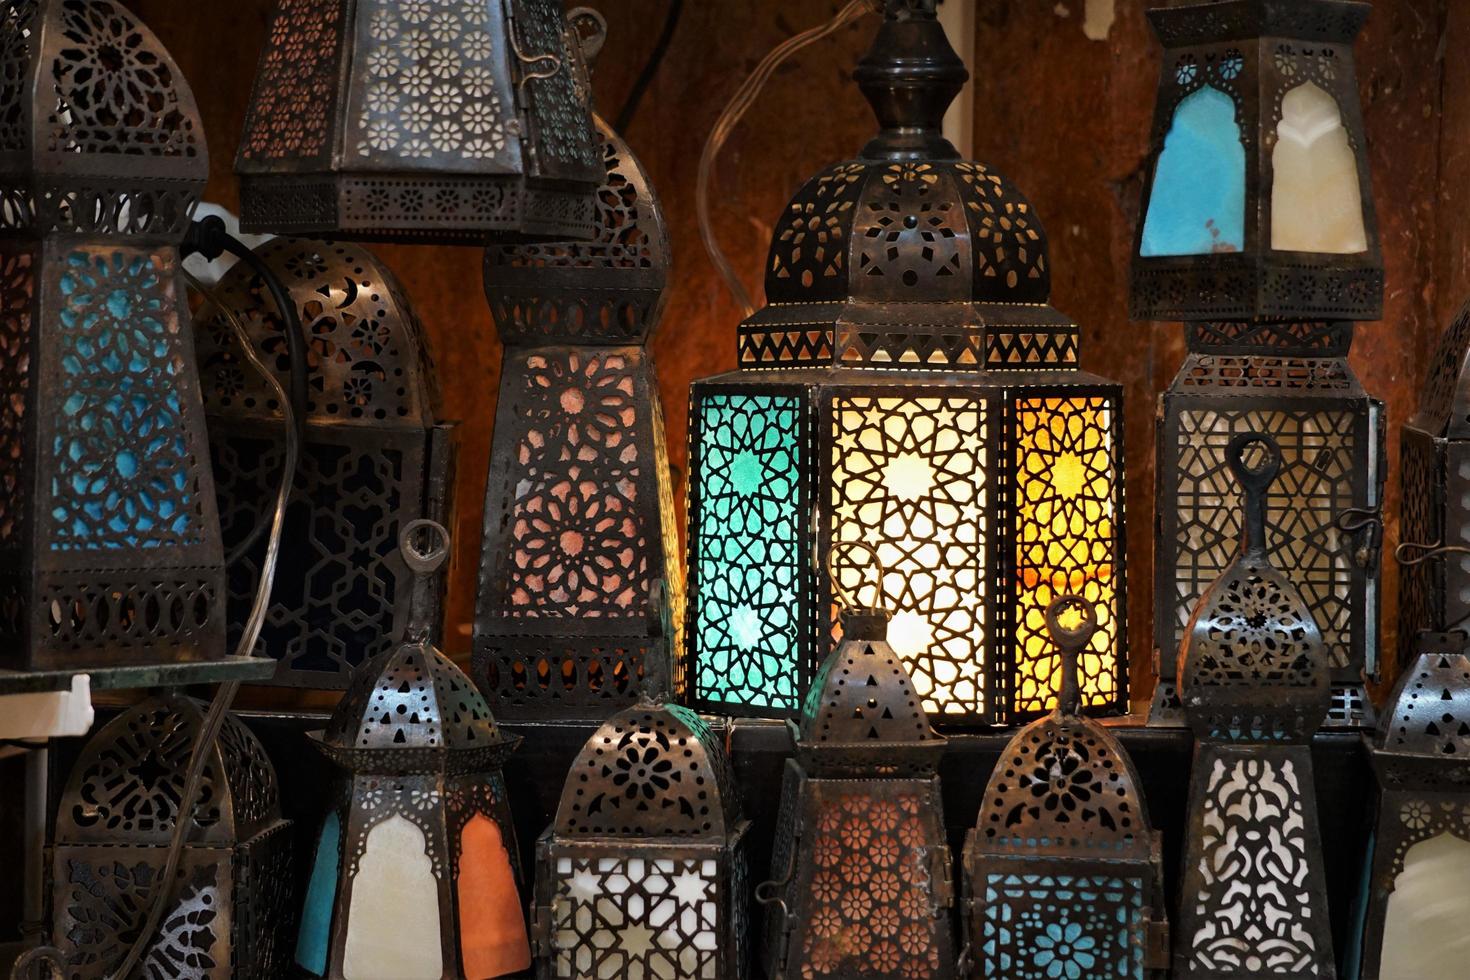 decorazioni orientali come fanoos per il mese del ramadan sul mercato, cairo egitto. foto